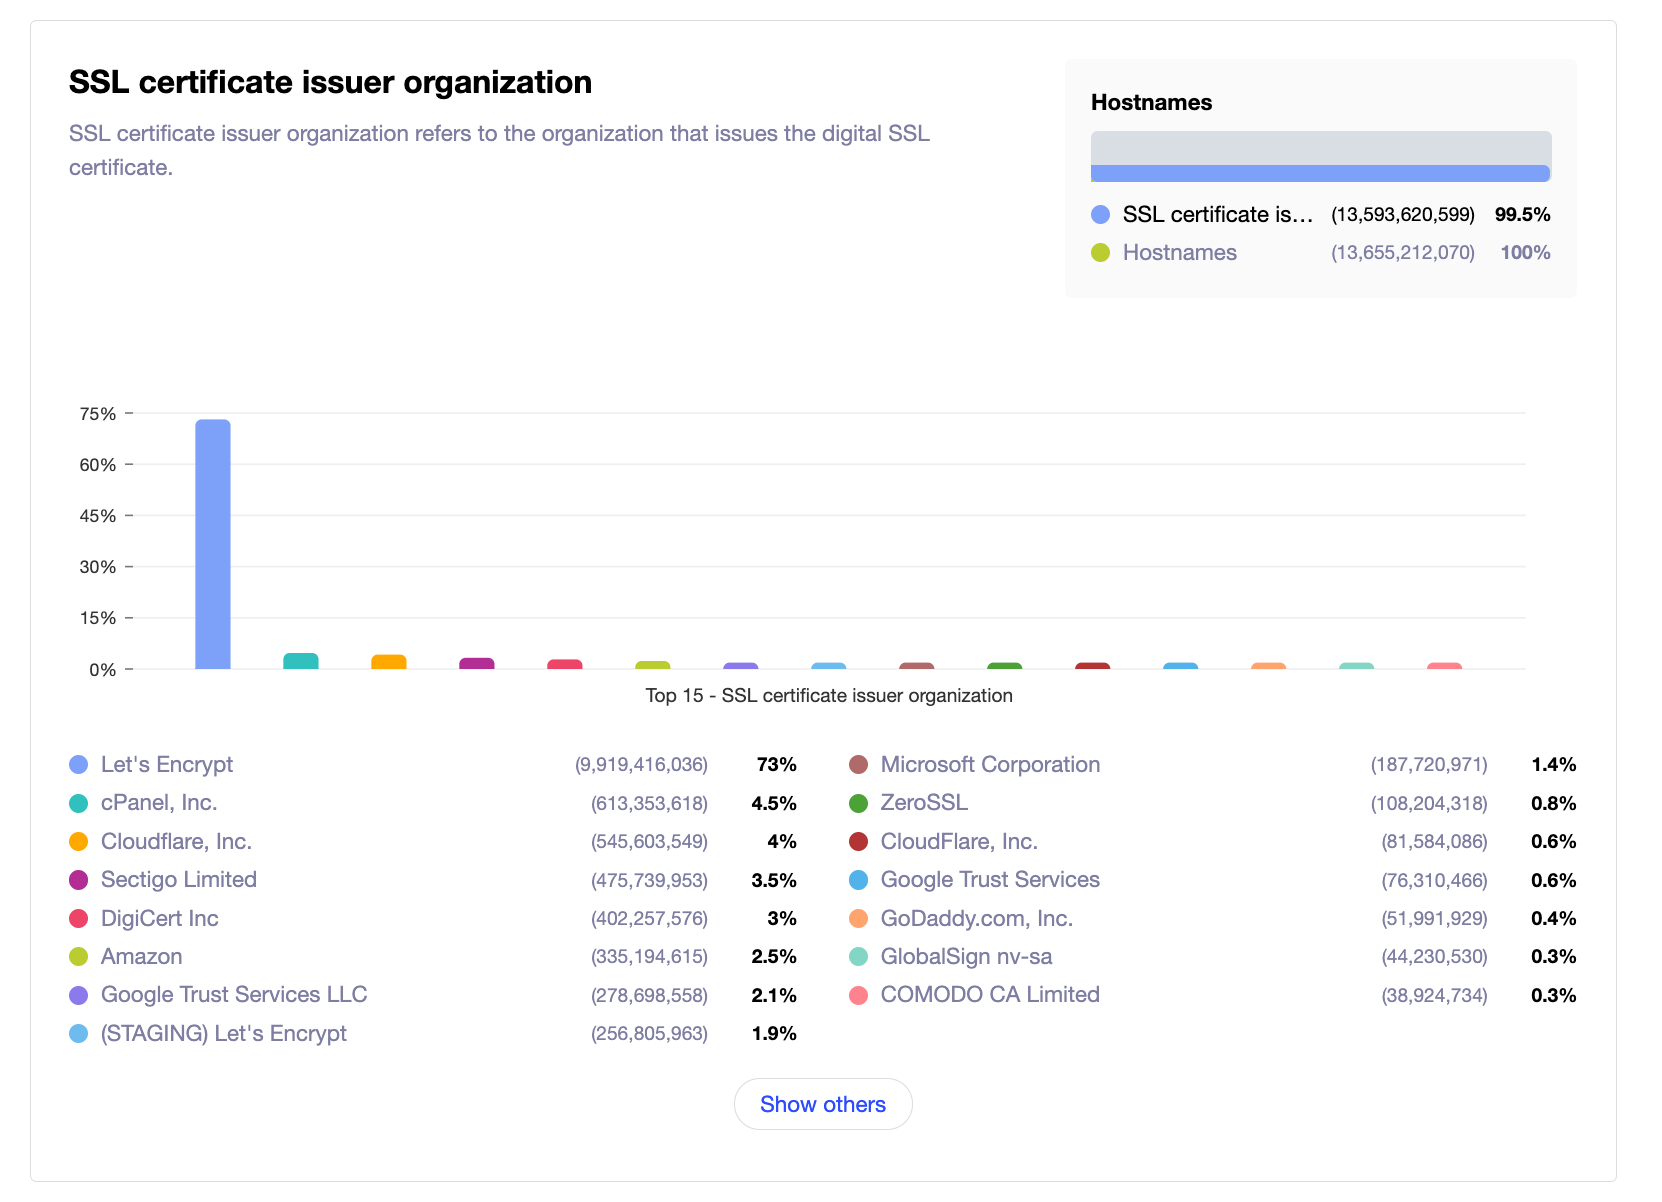 Most popular SSL issuer organizations